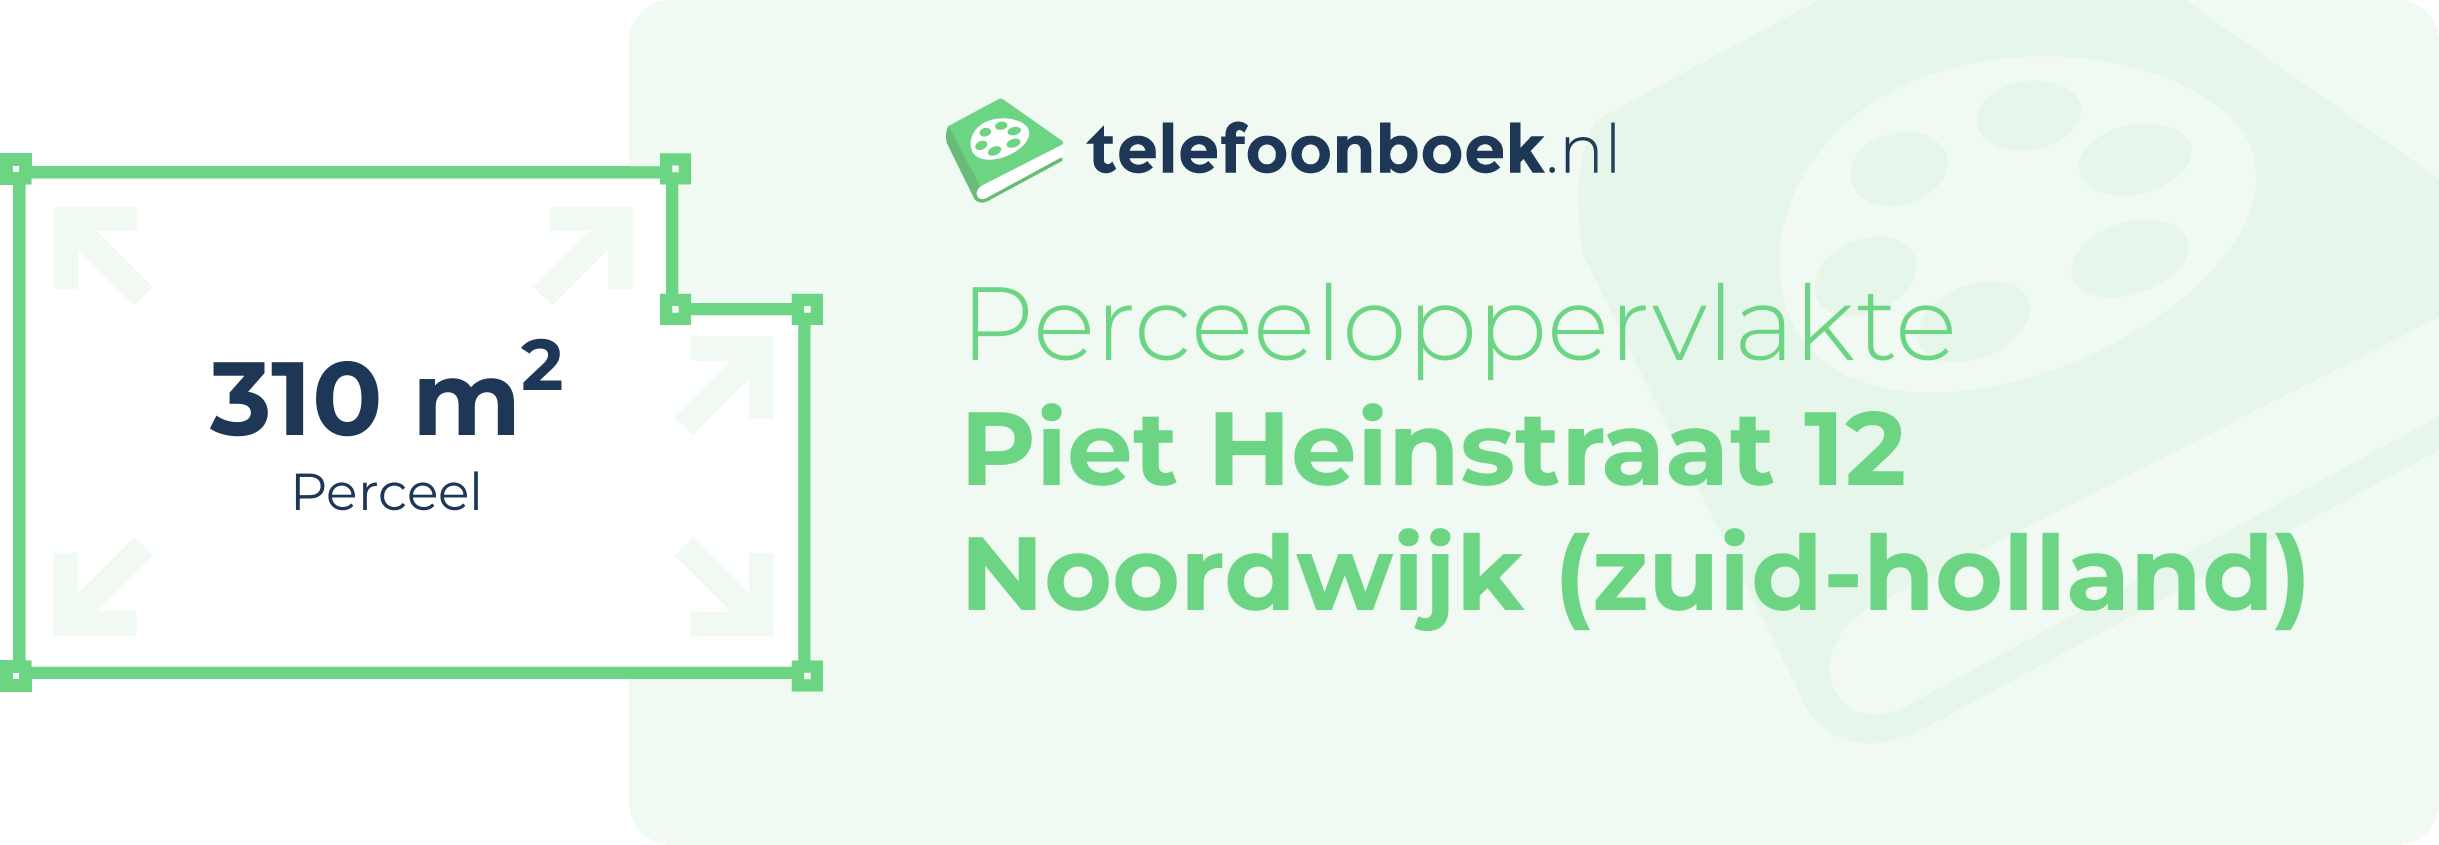 Perceeloppervlakte Piet Heinstraat 12 Noordwijk (Zuid-Holland)